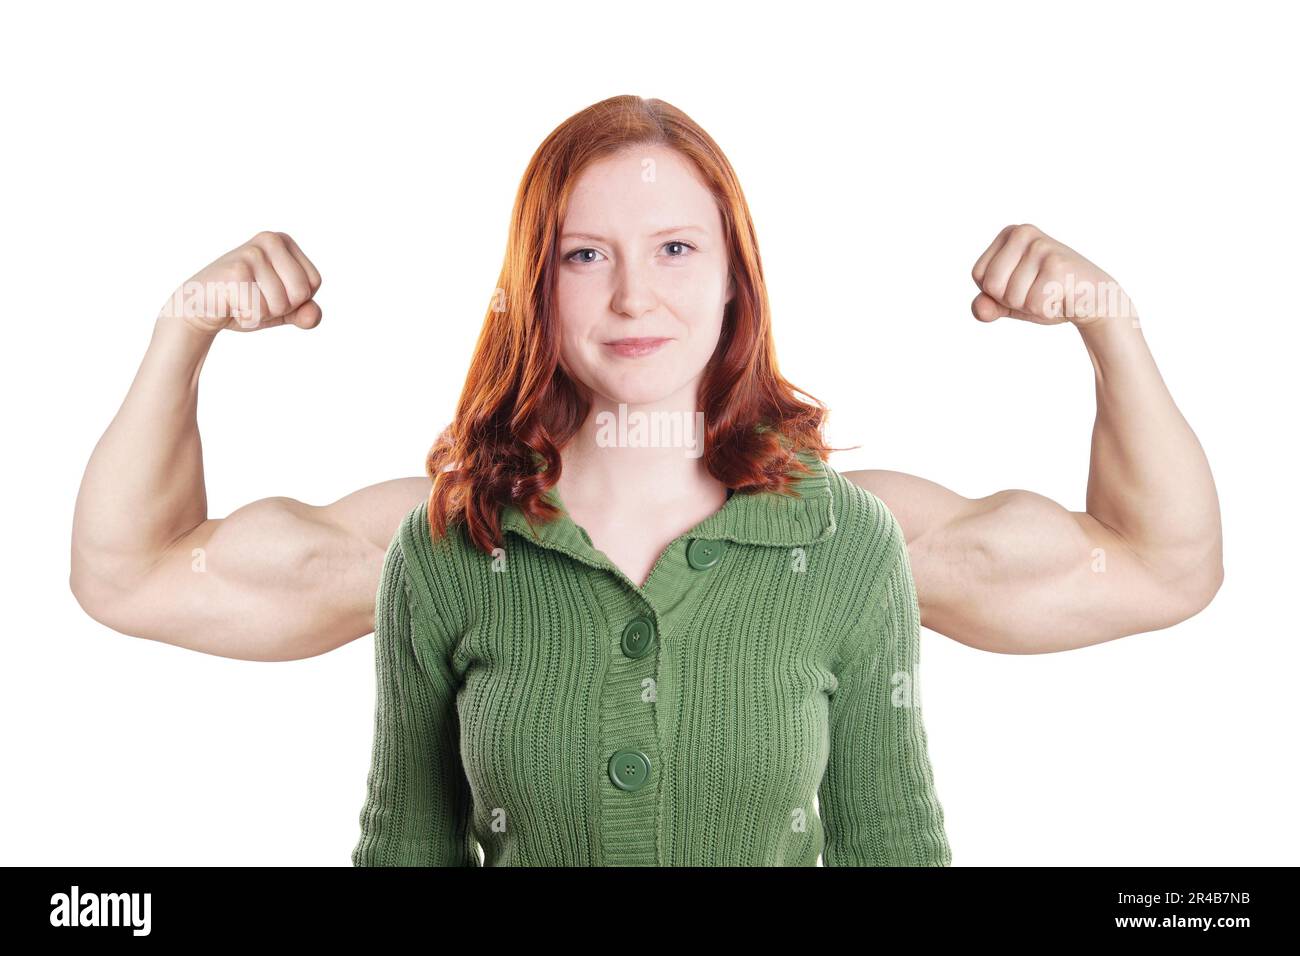 mujer joven confiada con concepto de poder muscular superpuesto en los brazos Foto de stock